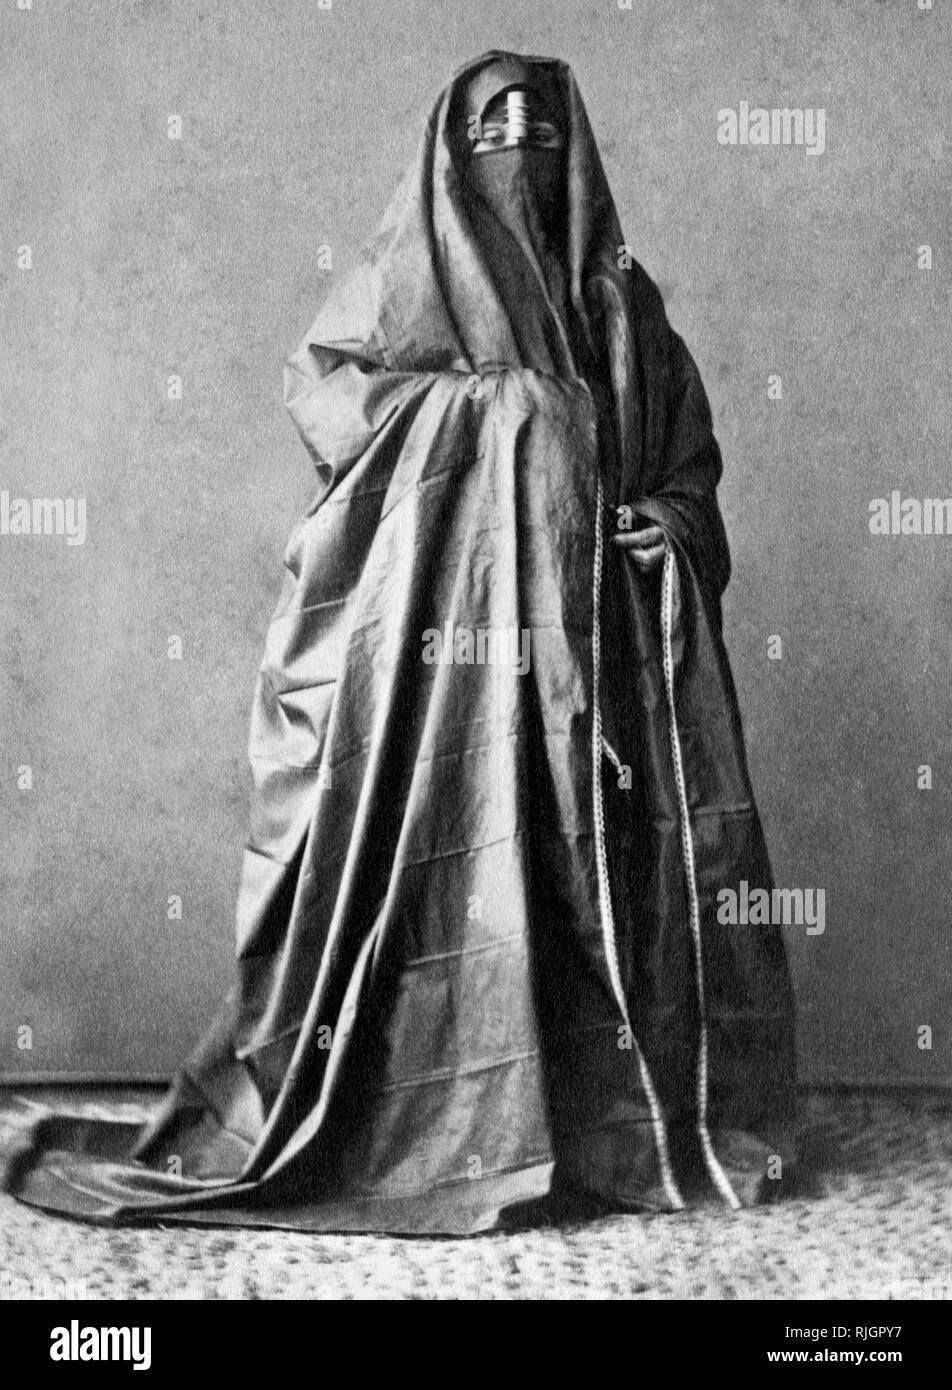 L'Afrique, l'egypte, Le Caire, jeune femme arabe, femme arabe, 1878 Banque D'Images